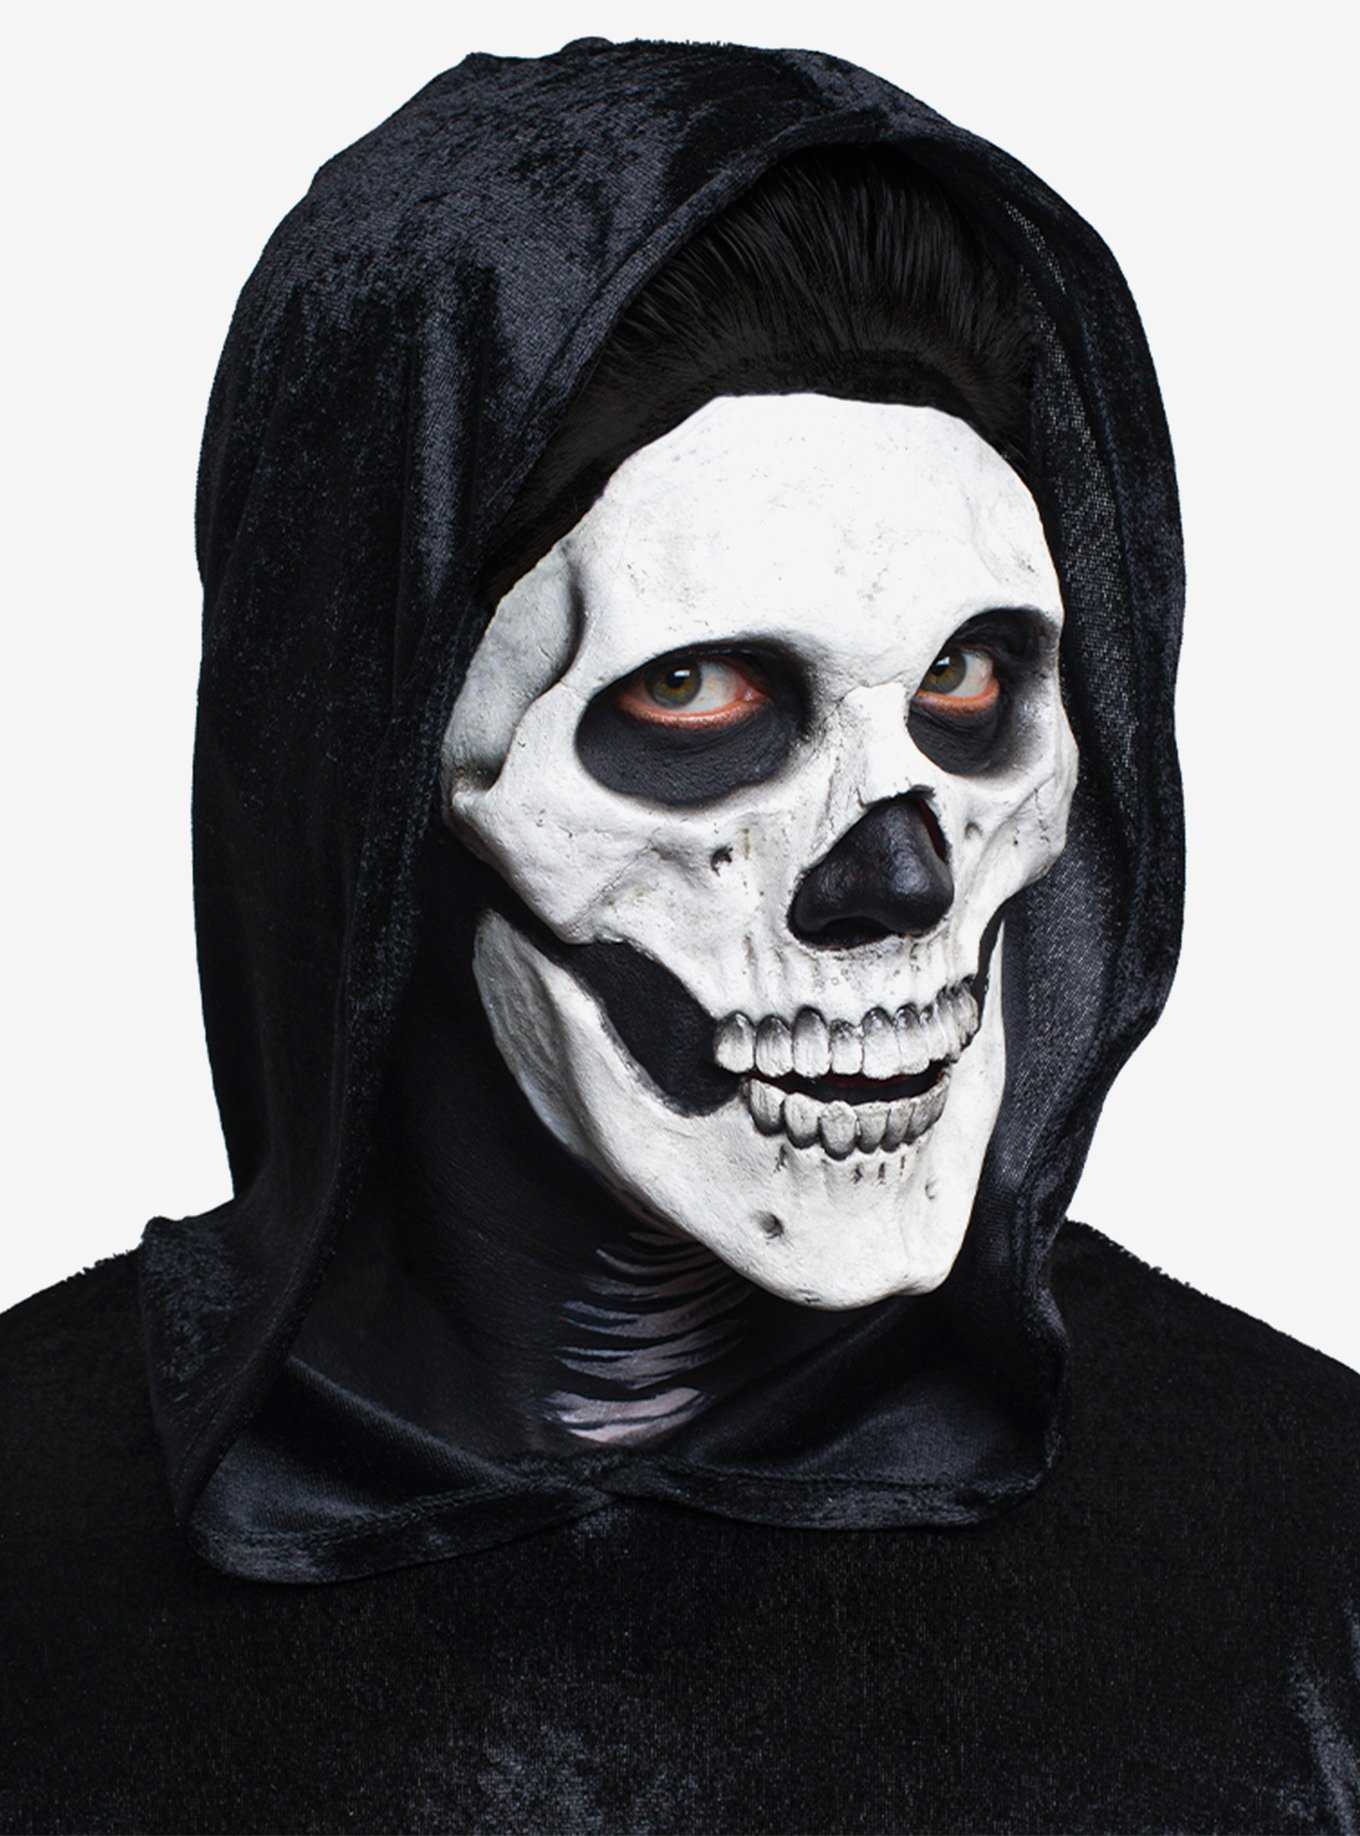 Skull Prosthetic Mask, , hi-res